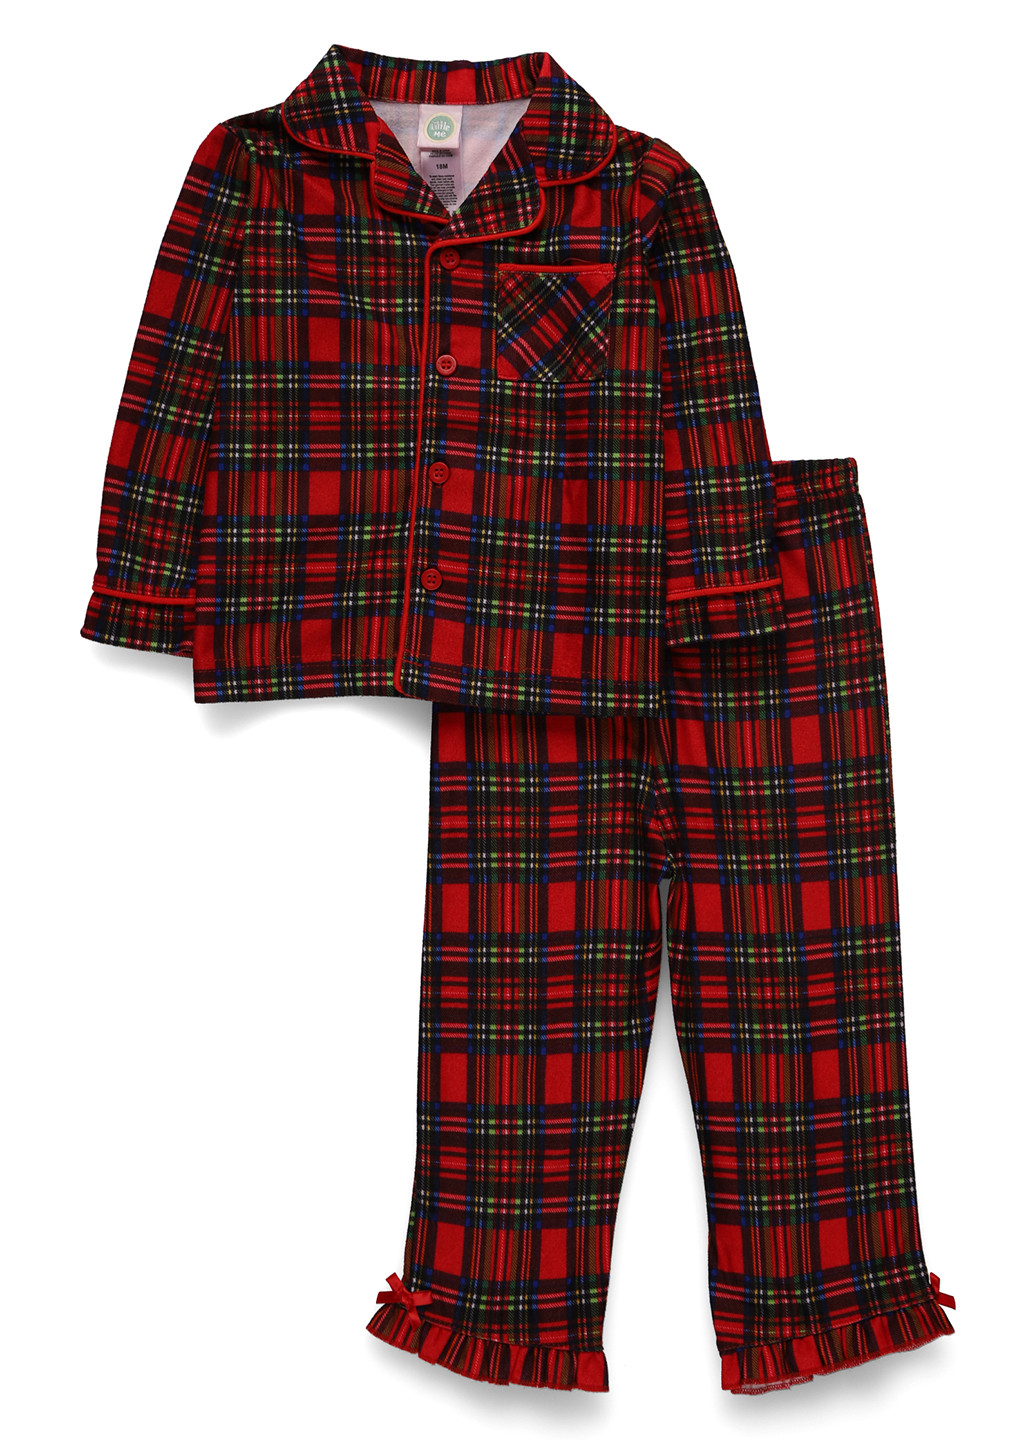 Красная всесезон пижама (рубашка, брюки) рубашка + брюки Little Me